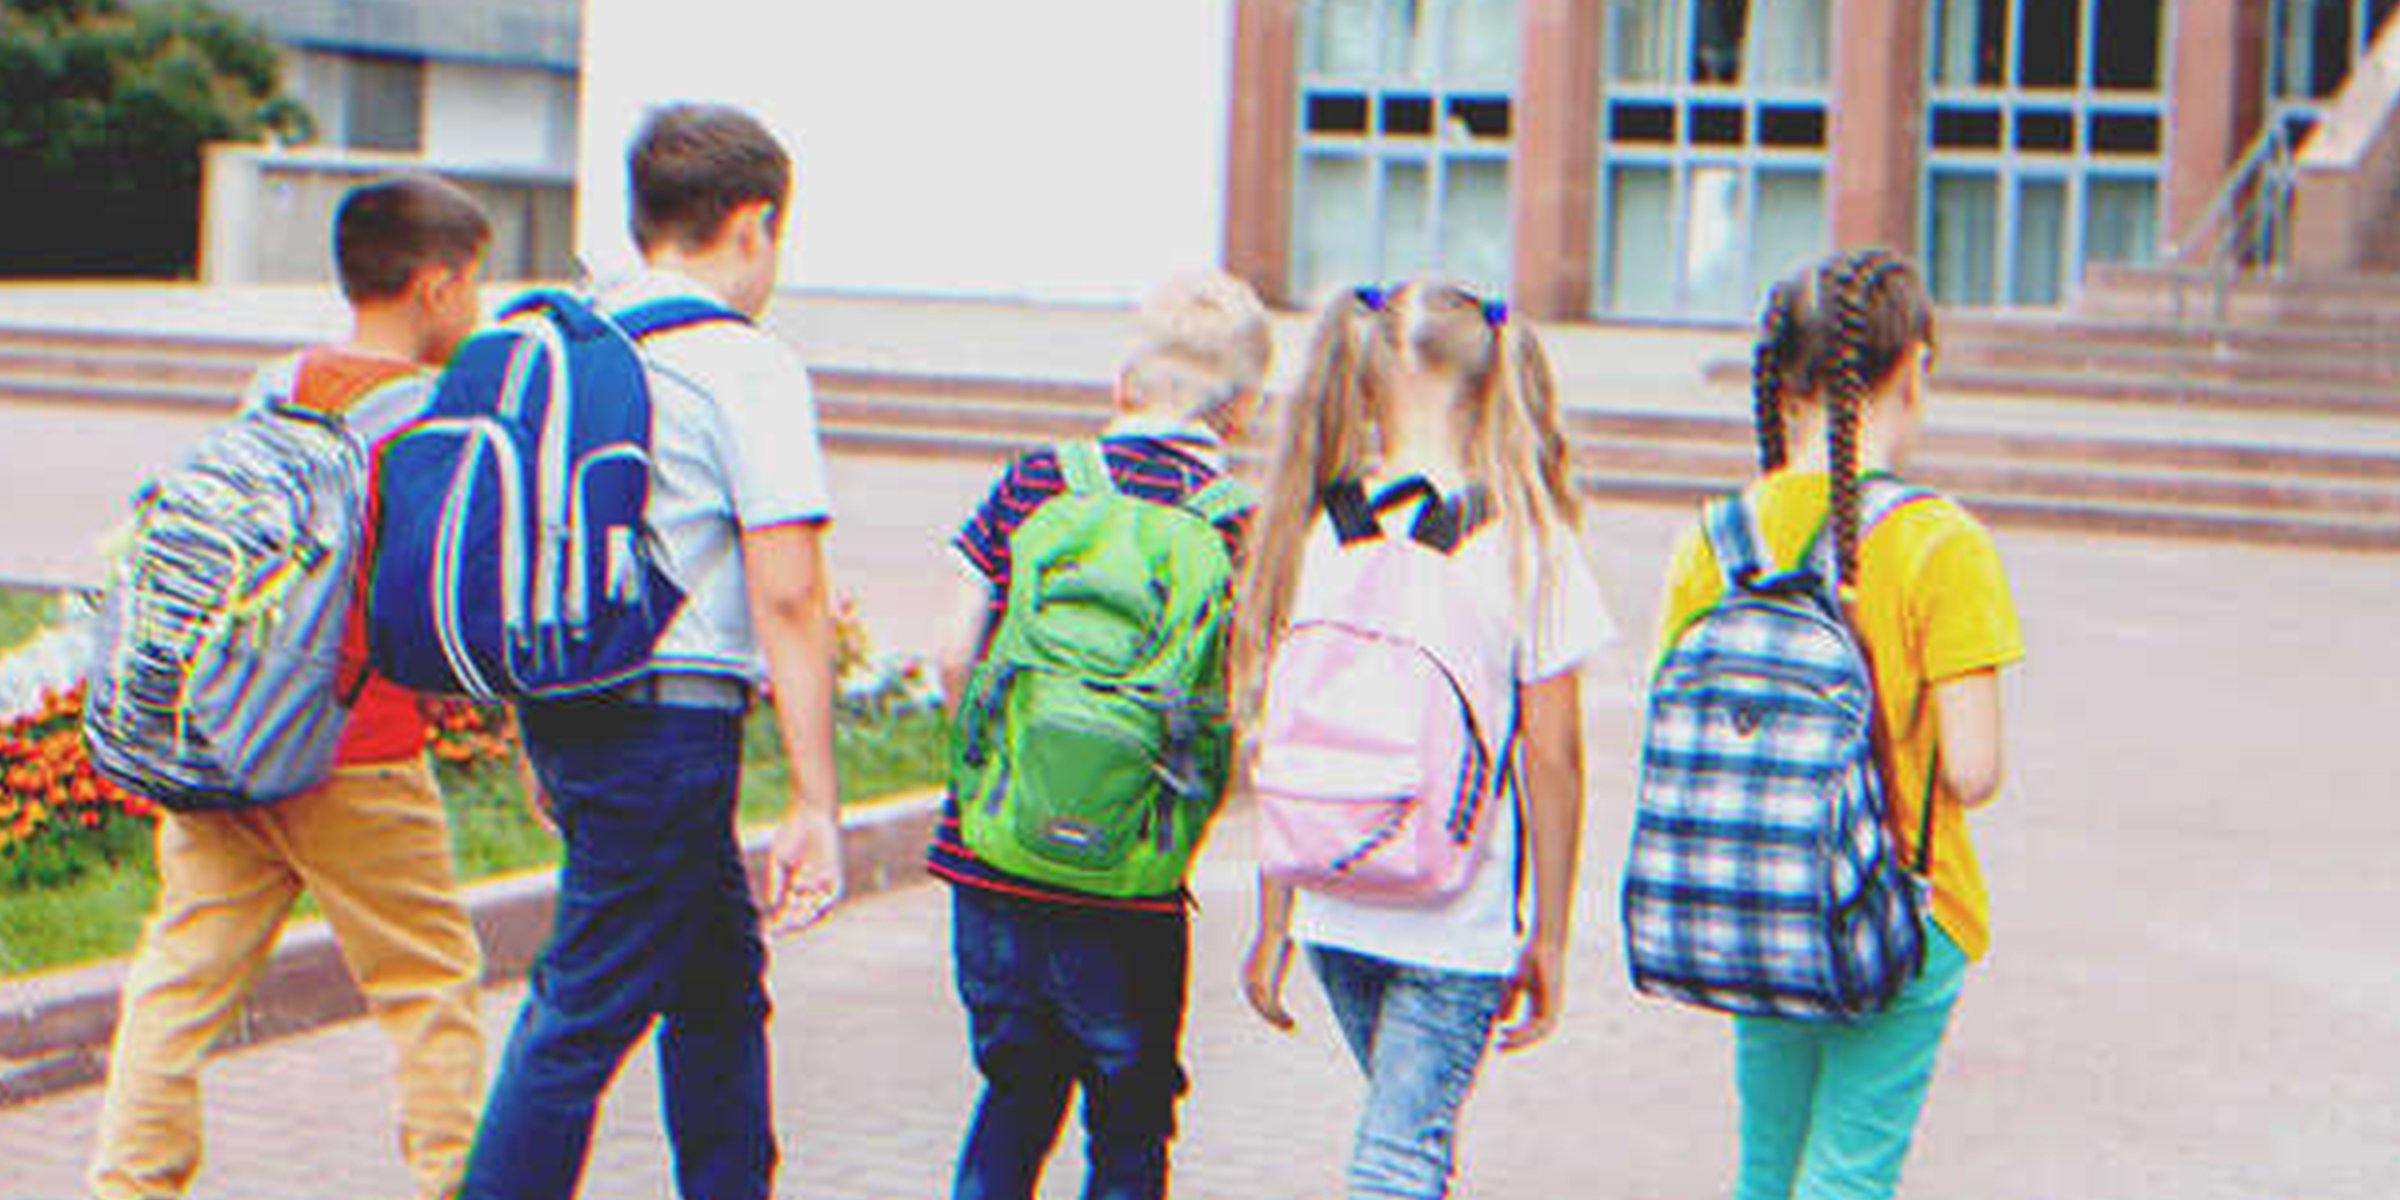 In grupo de niños ingresando a la escuela | Foto: Shutterstock